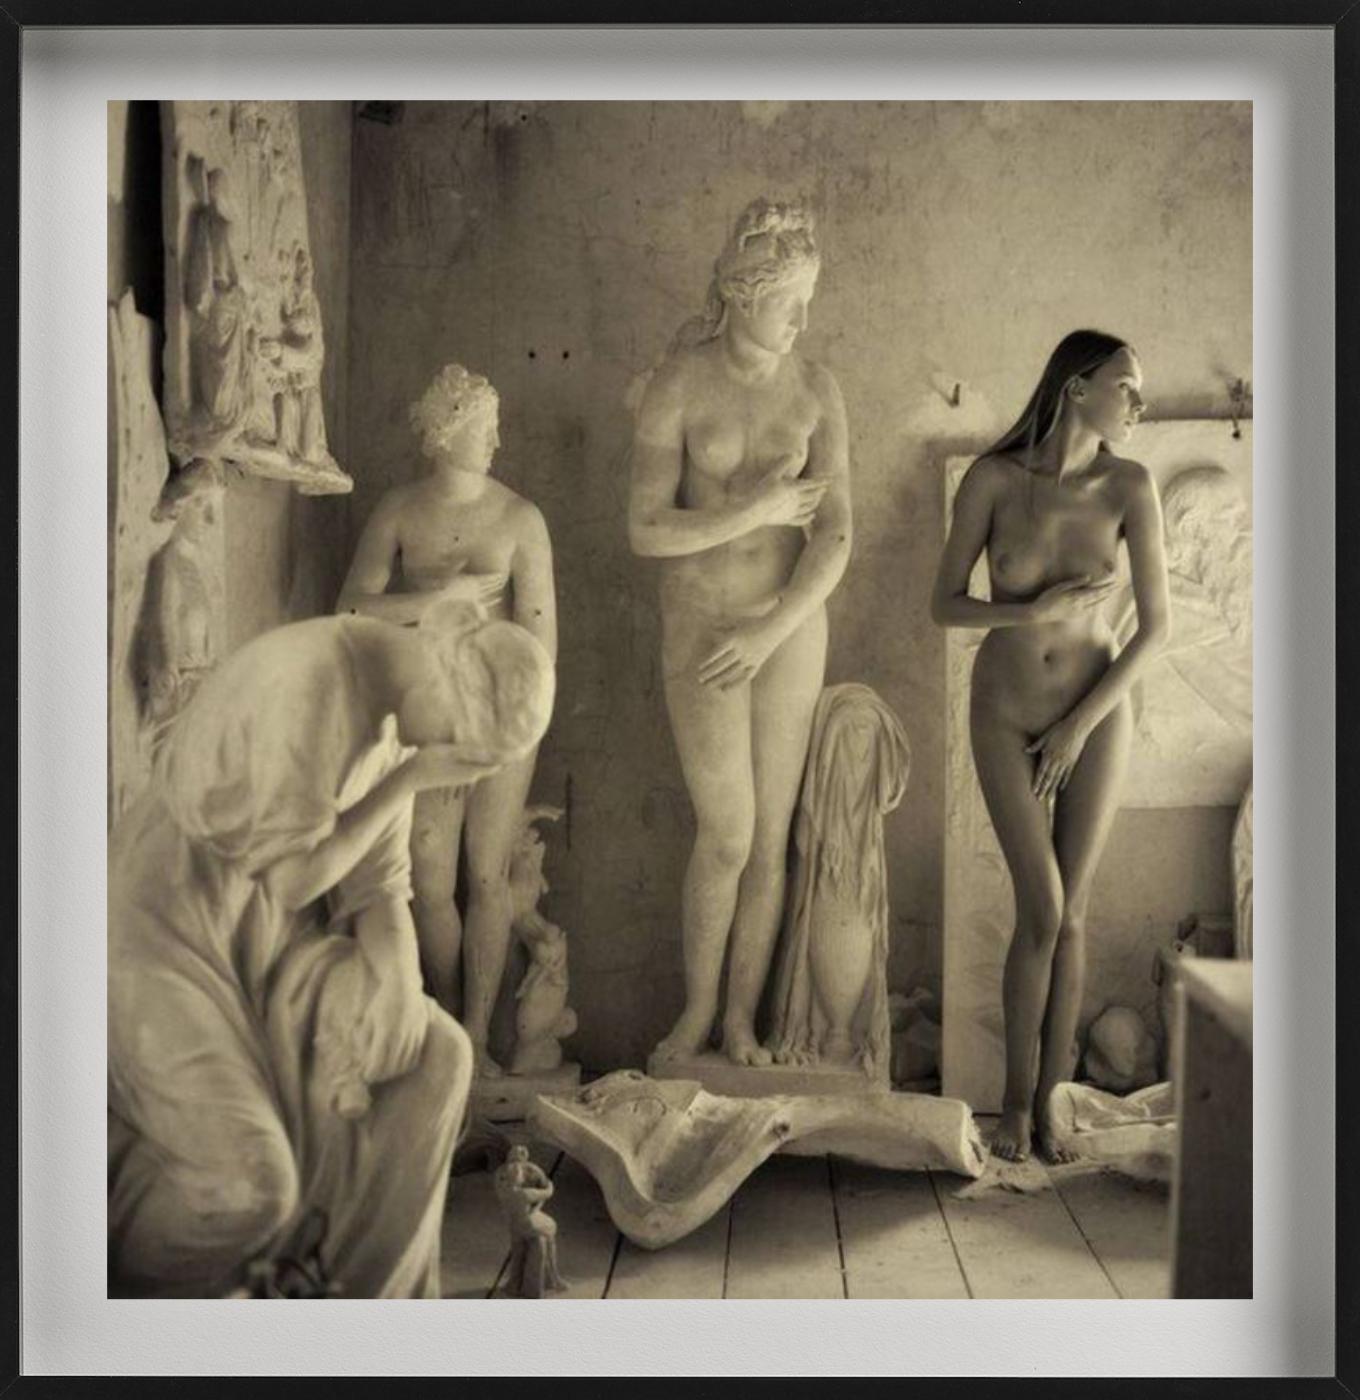 Skulpturaler Akt – nackt mit antiken Marmor Venusstatuen, Kunstfotografie (Beige), Nude Photograph, von Guido Argentini